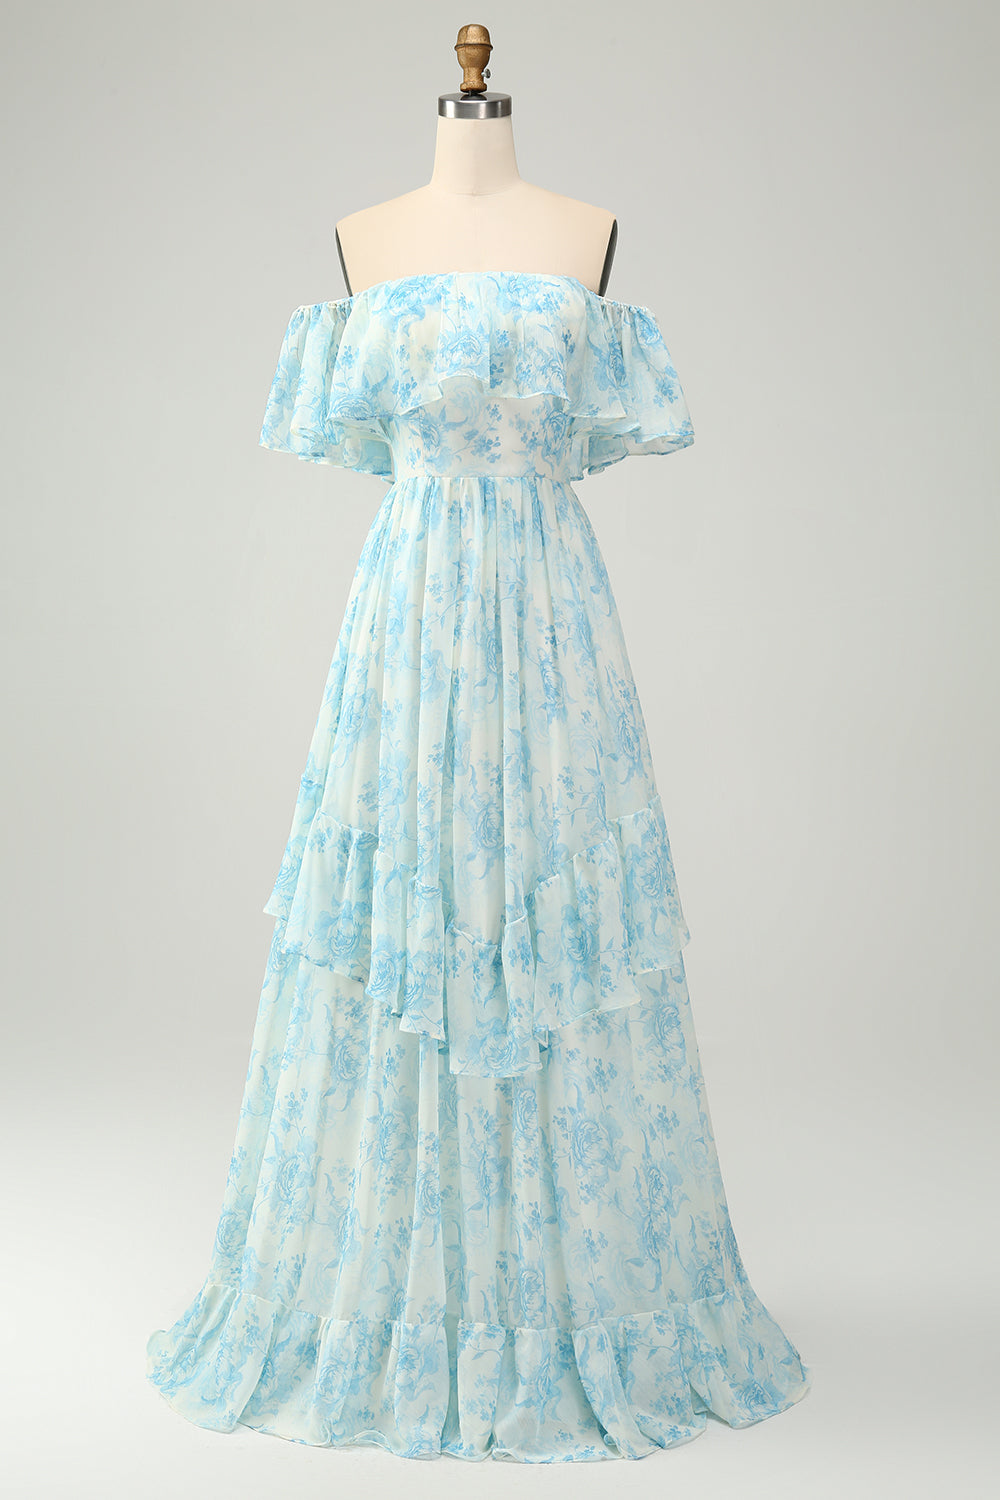 Biało-Niebieska Kwiatowa Długa Sukienki Na Wesele Z Odkrytymi Ramionami